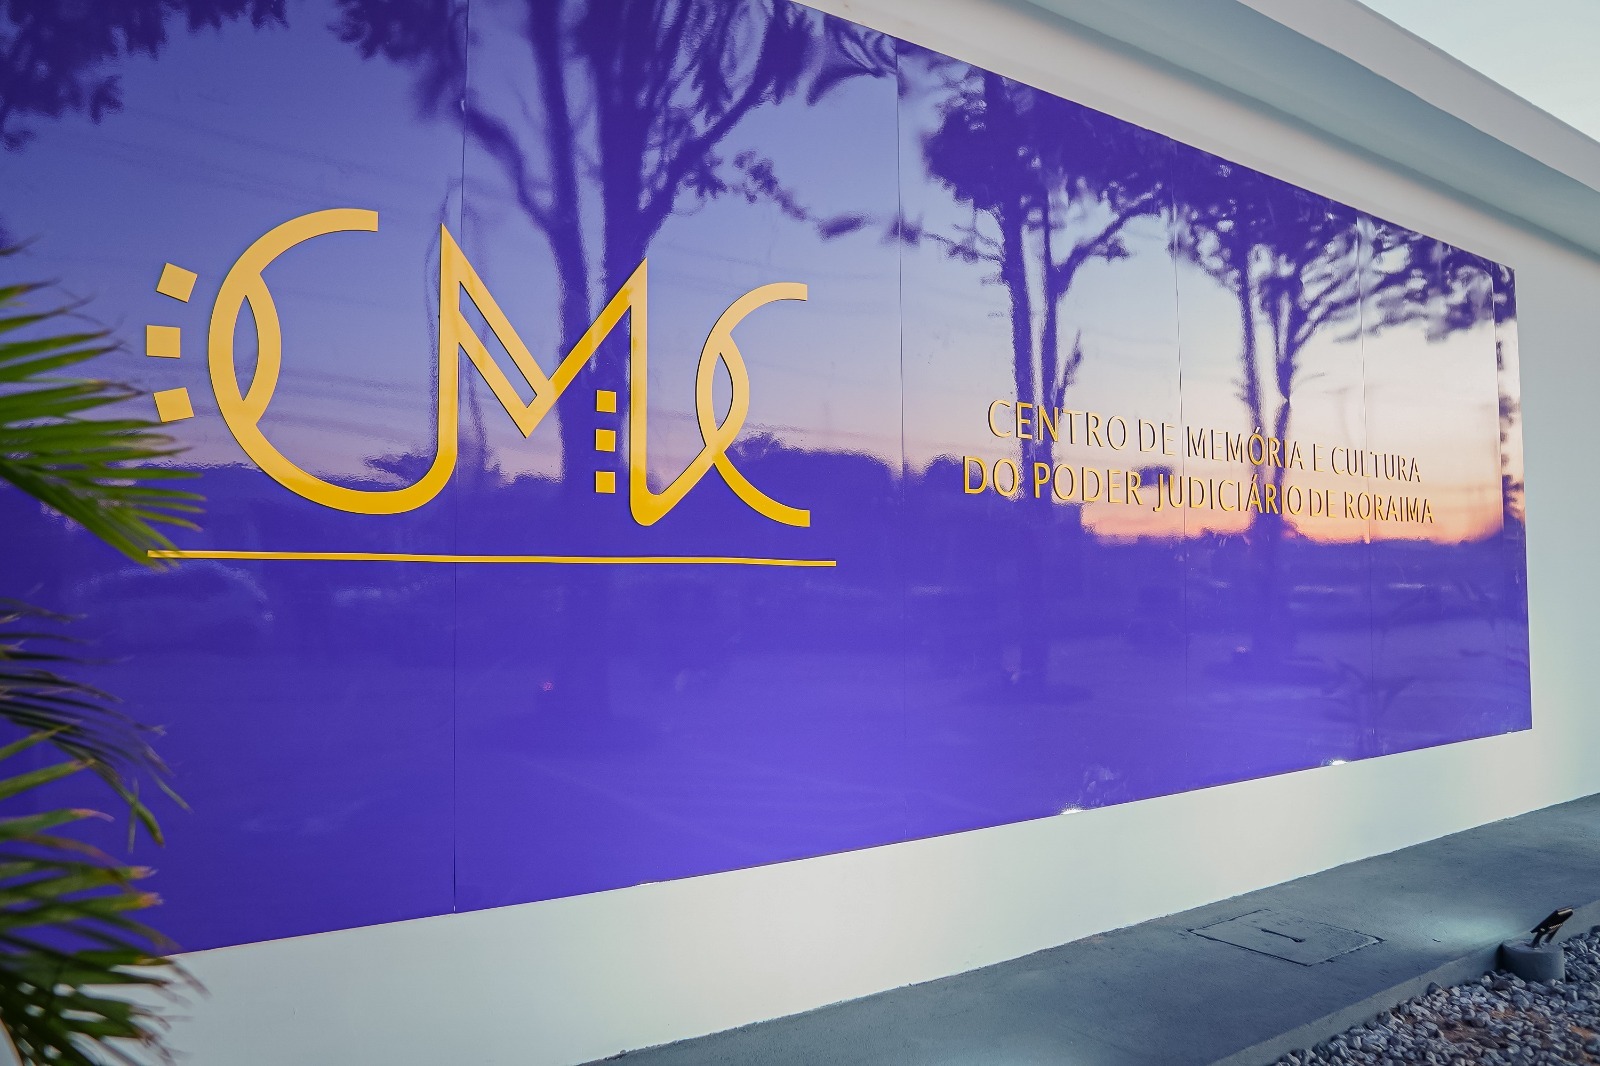 Imagem colorida em formato retangular mostra um painel na cor roxa com o logotipo “CMC” e ao lado a frase “Centro de Memória e Cultura do Poder Judiciário", ambas escritas na tonalidade amarela.